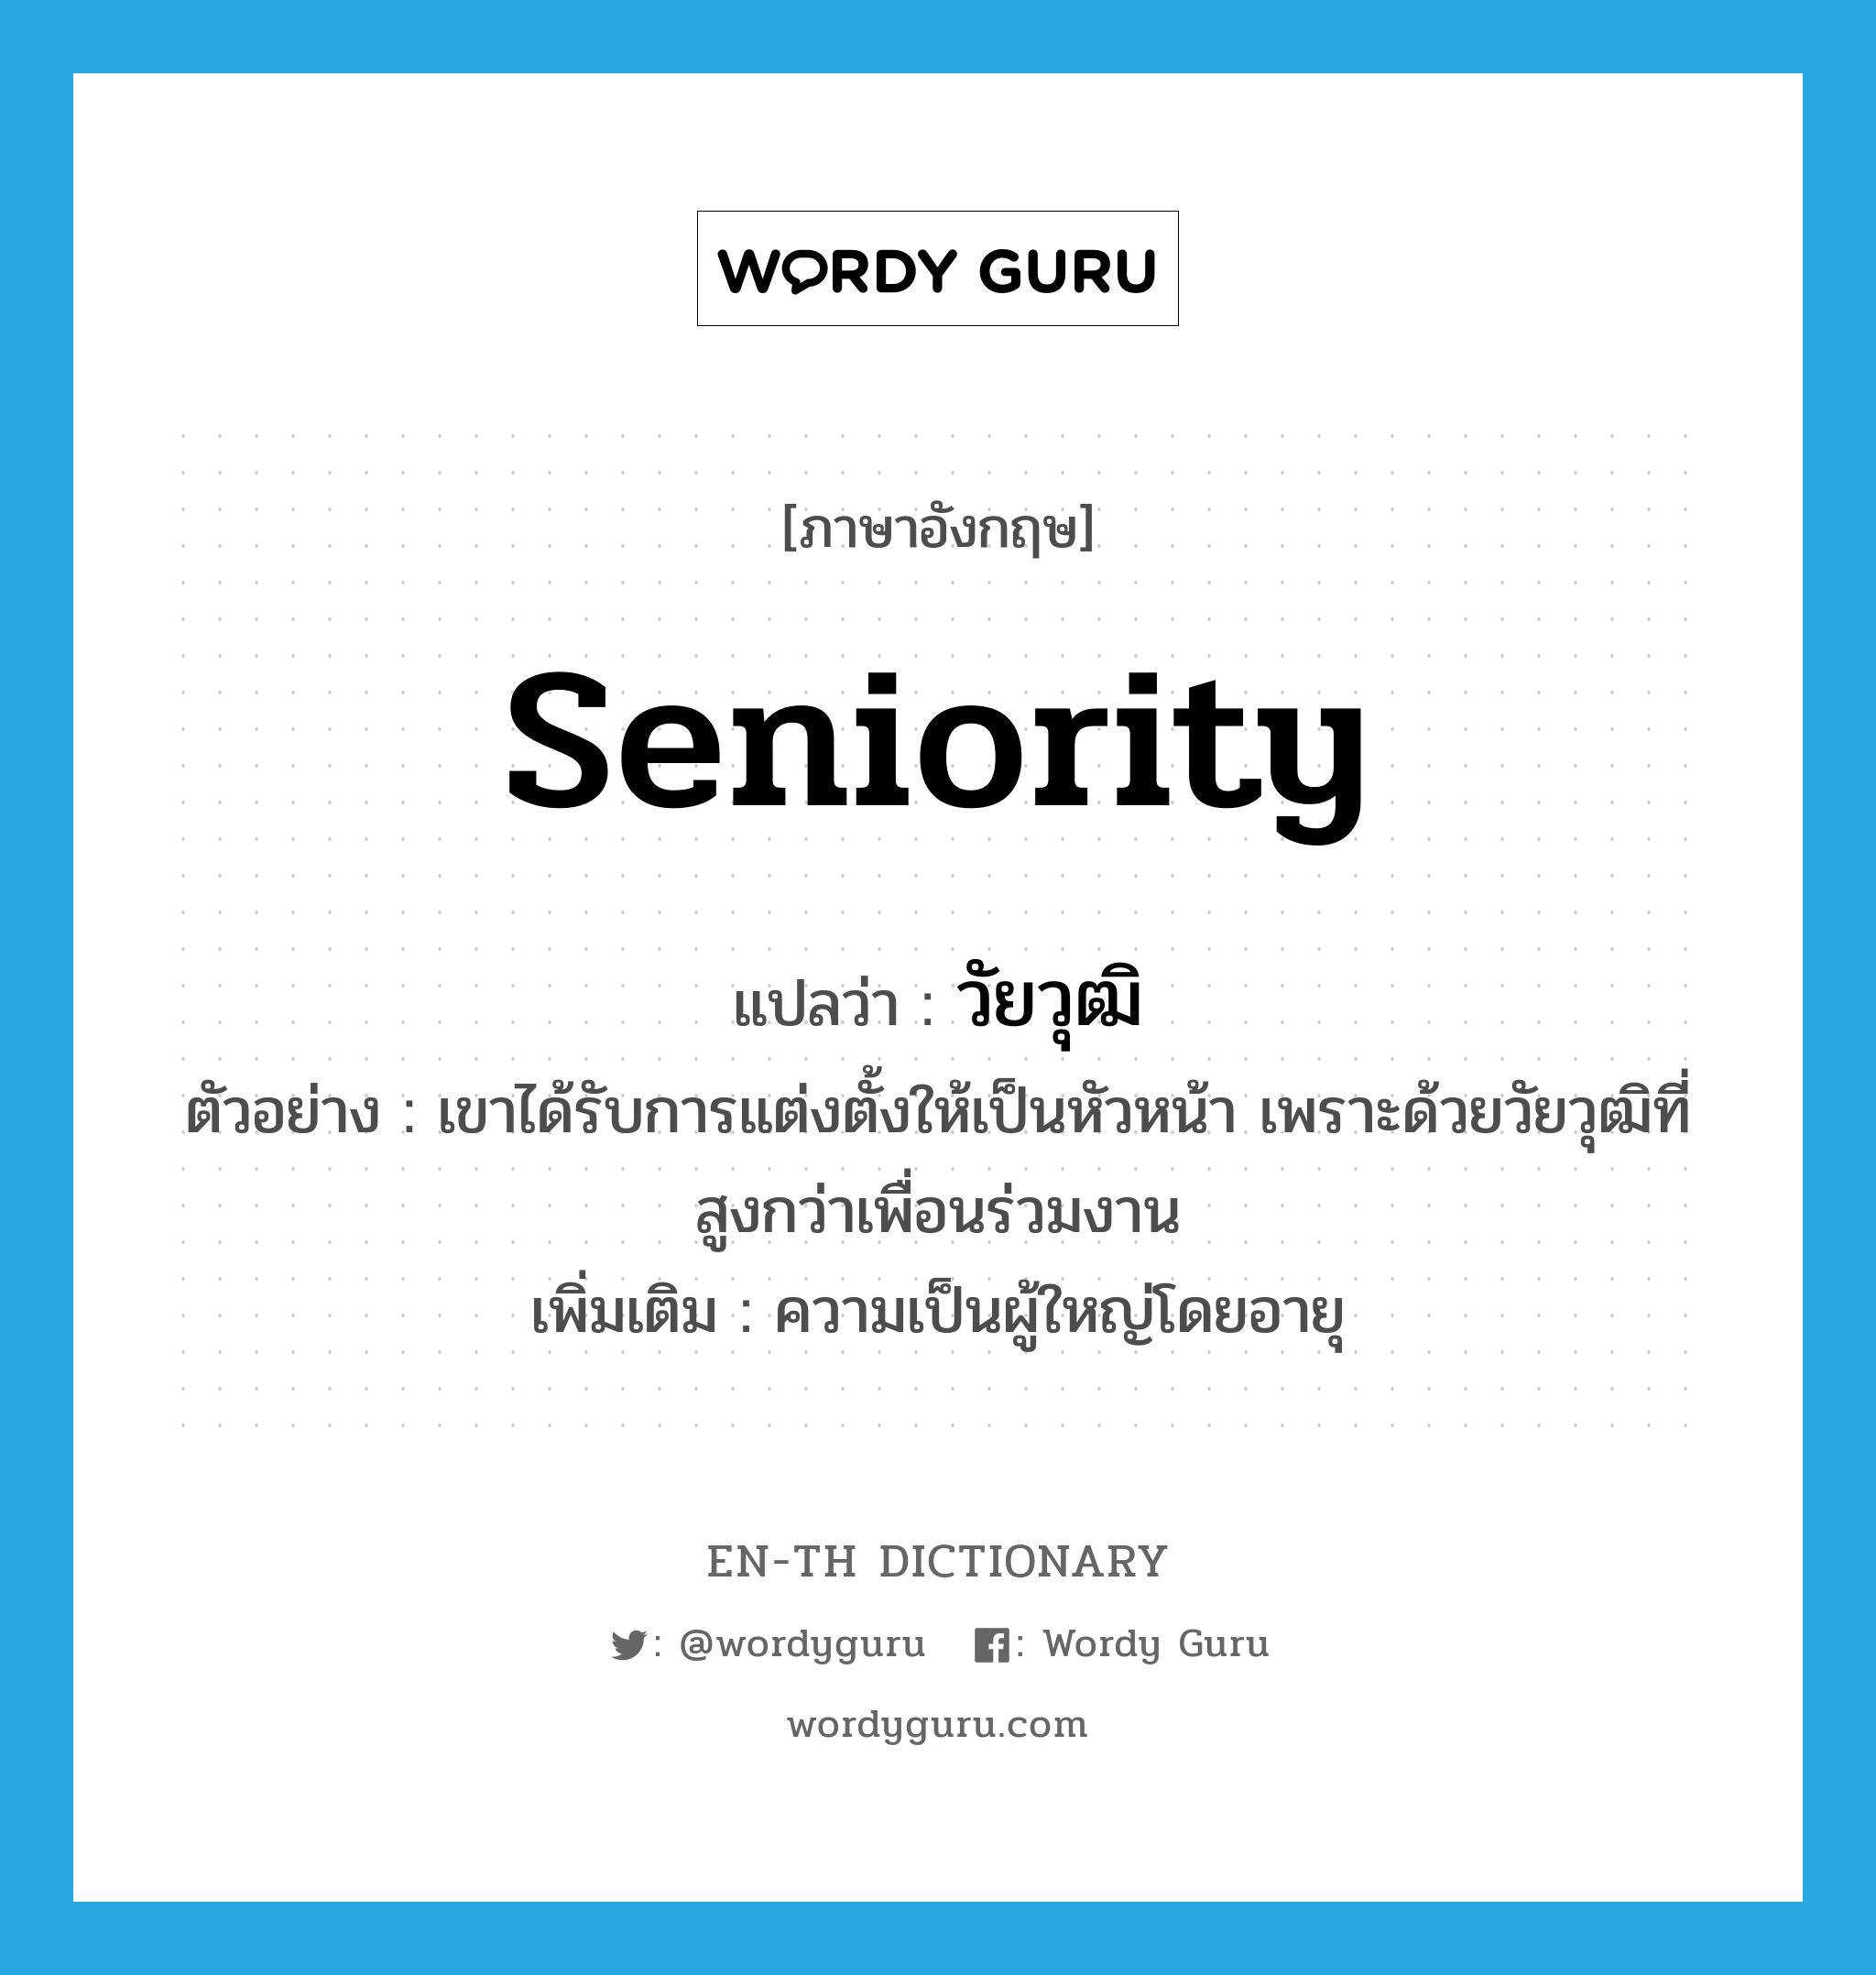 seniority แปลว่า?, คำศัพท์ภาษาอังกฤษ seniority แปลว่า วัยวุฒิ ประเภท N ตัวอย่าง เขาได้รับการแต่งตั้งให้เป็นหัวหน้า เพราะด้วยวัยวุฒิที่สูงกว่าเพื่อนร่วมงาน เพิ่มเติม ความเป็นผู้ใหญ่โดยอายุ หมวด N